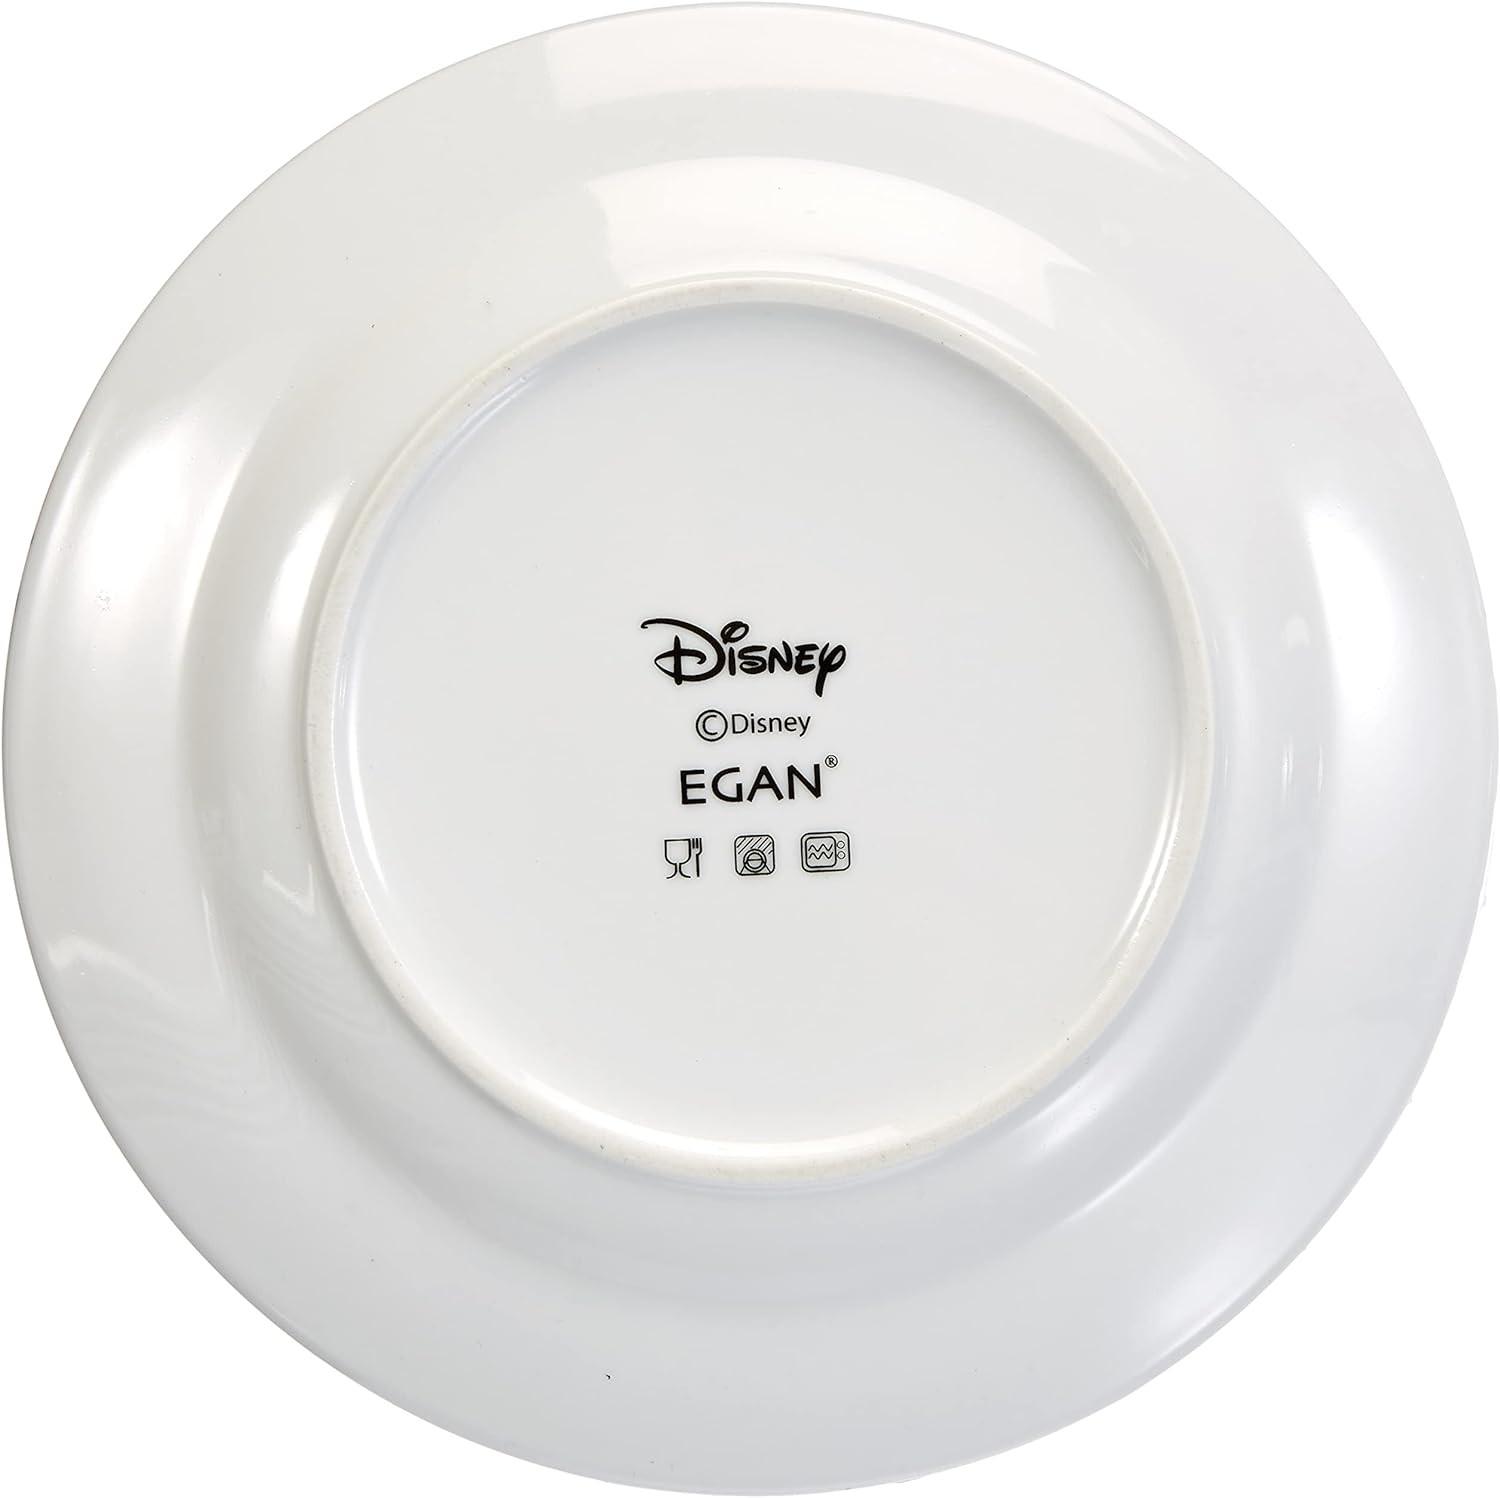 Egan Disney / 7 nains (7 pcs. / 19 cm) - Set d'assiettes  